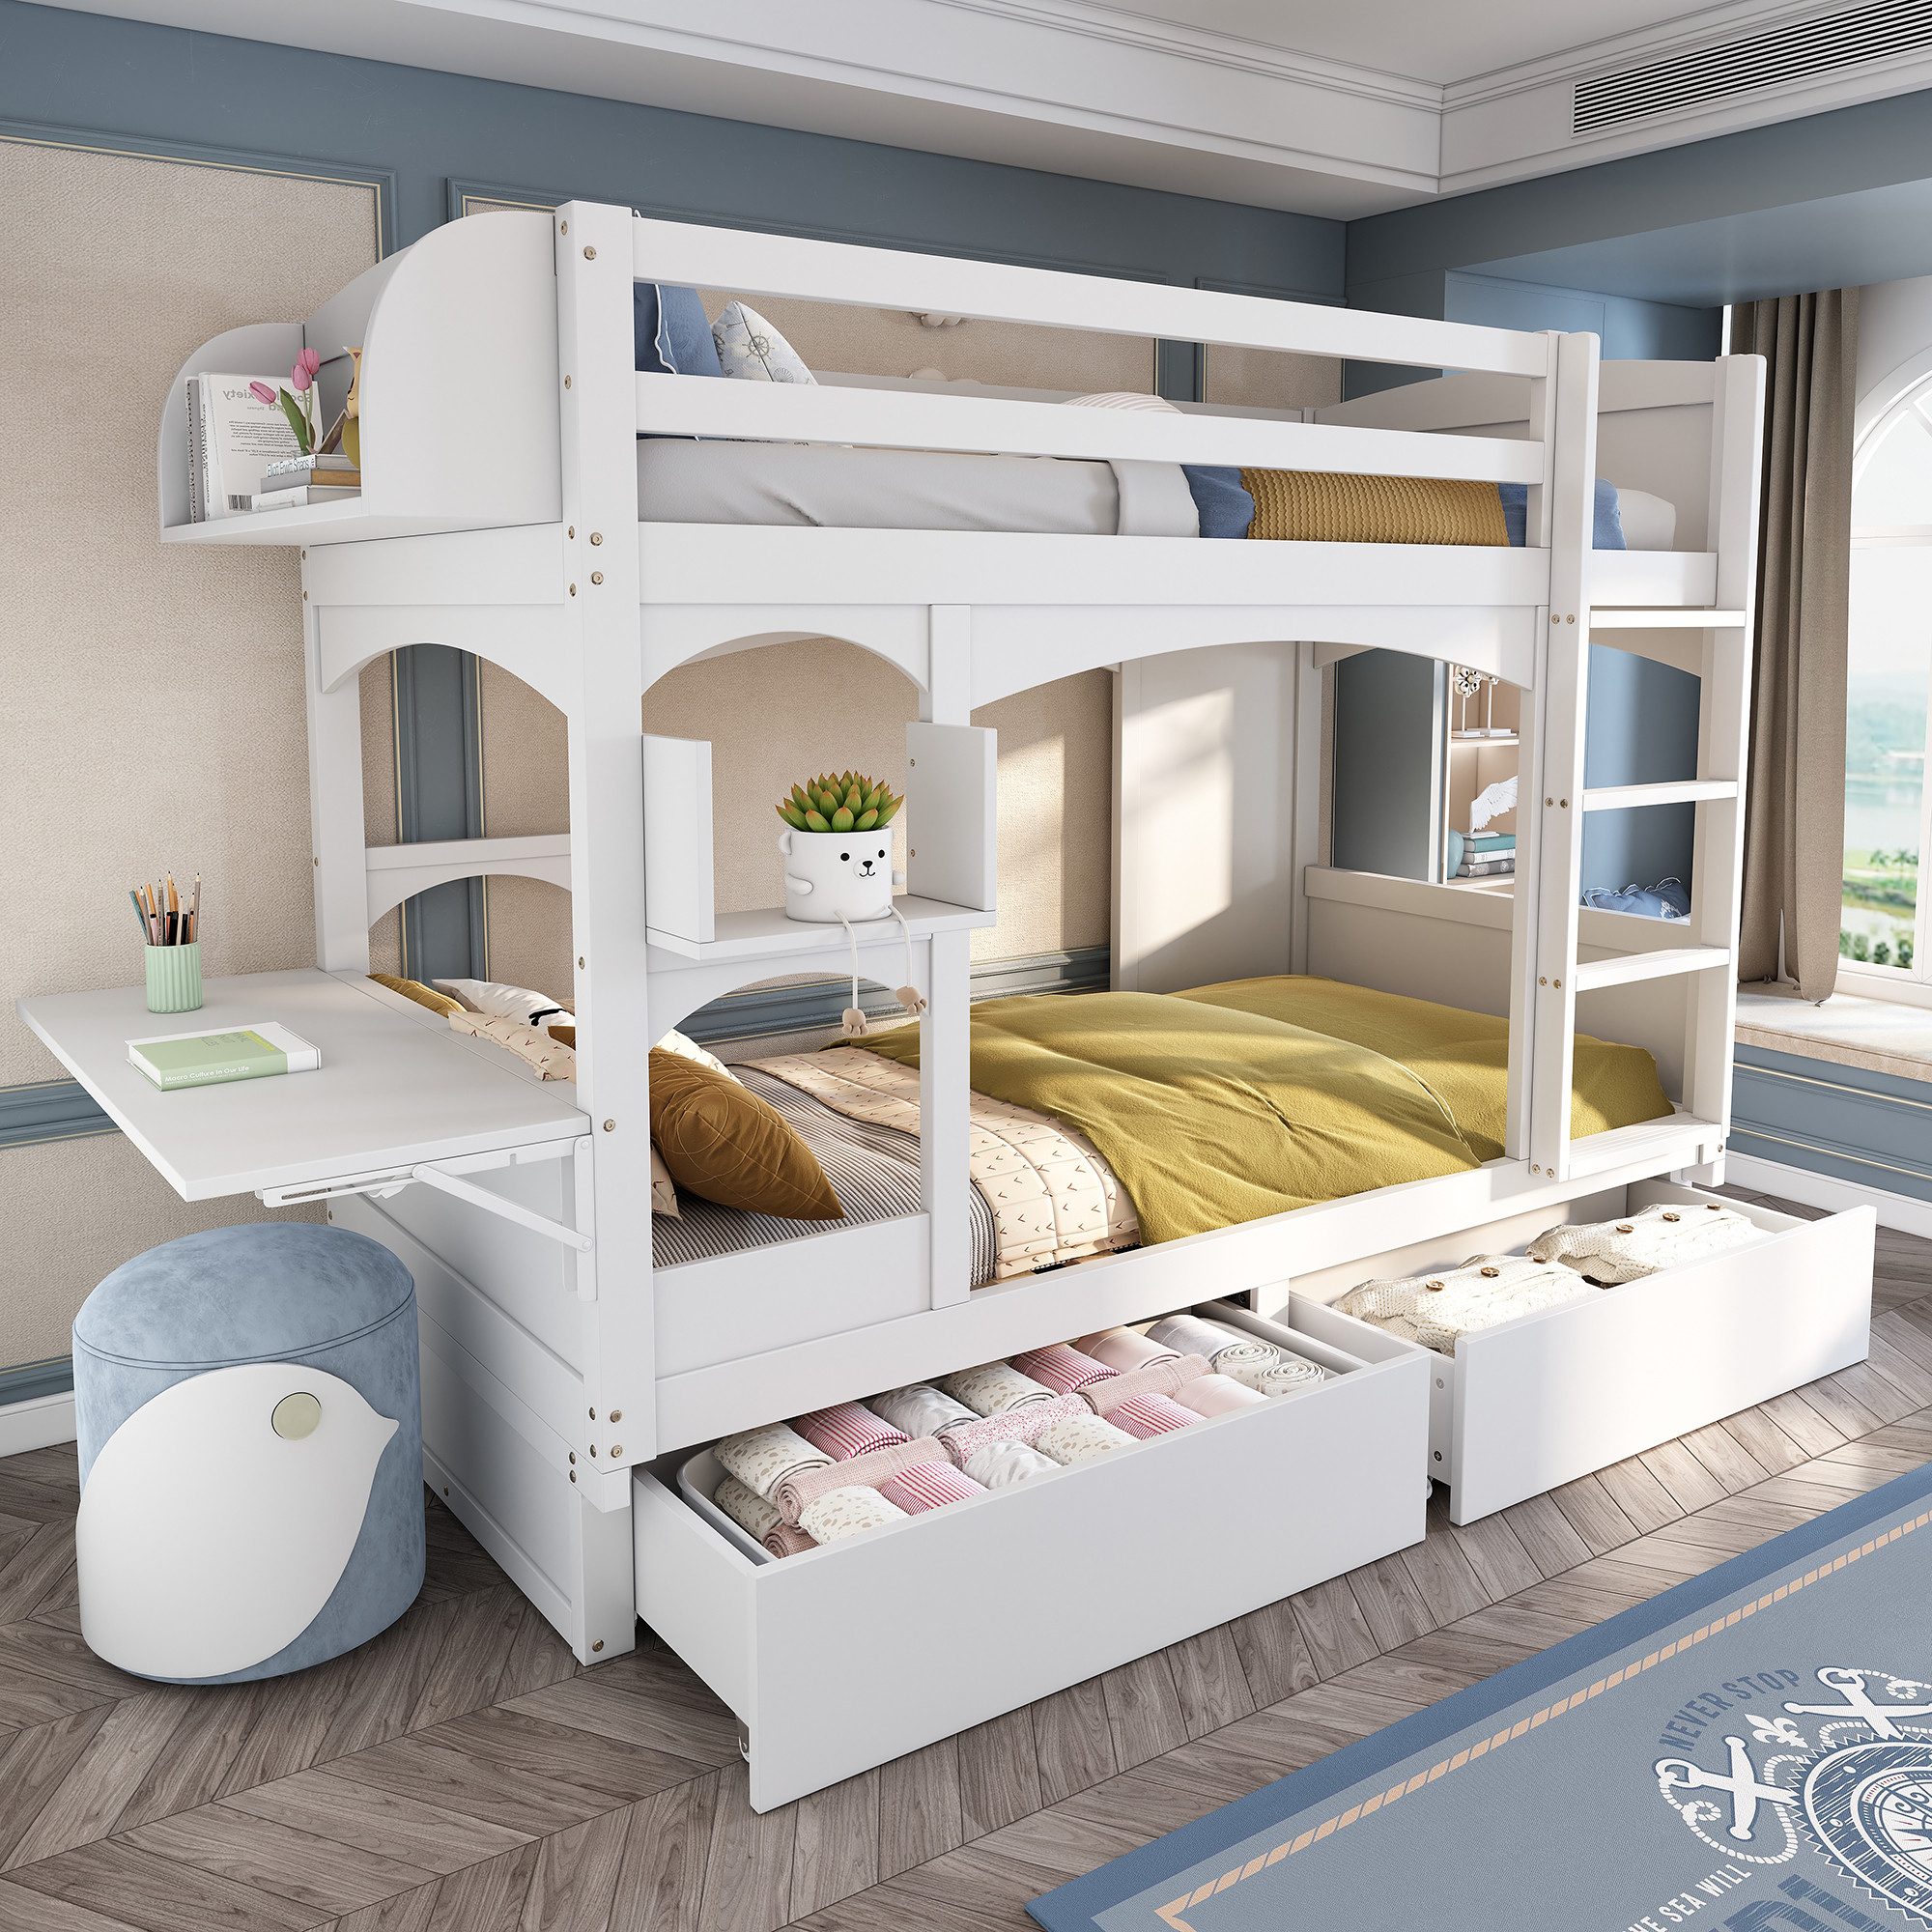 Flieks Etagenbett, Kinderbett mit klappbarem Schreibtisch, Regal, 2 Schubladen 90x200cm